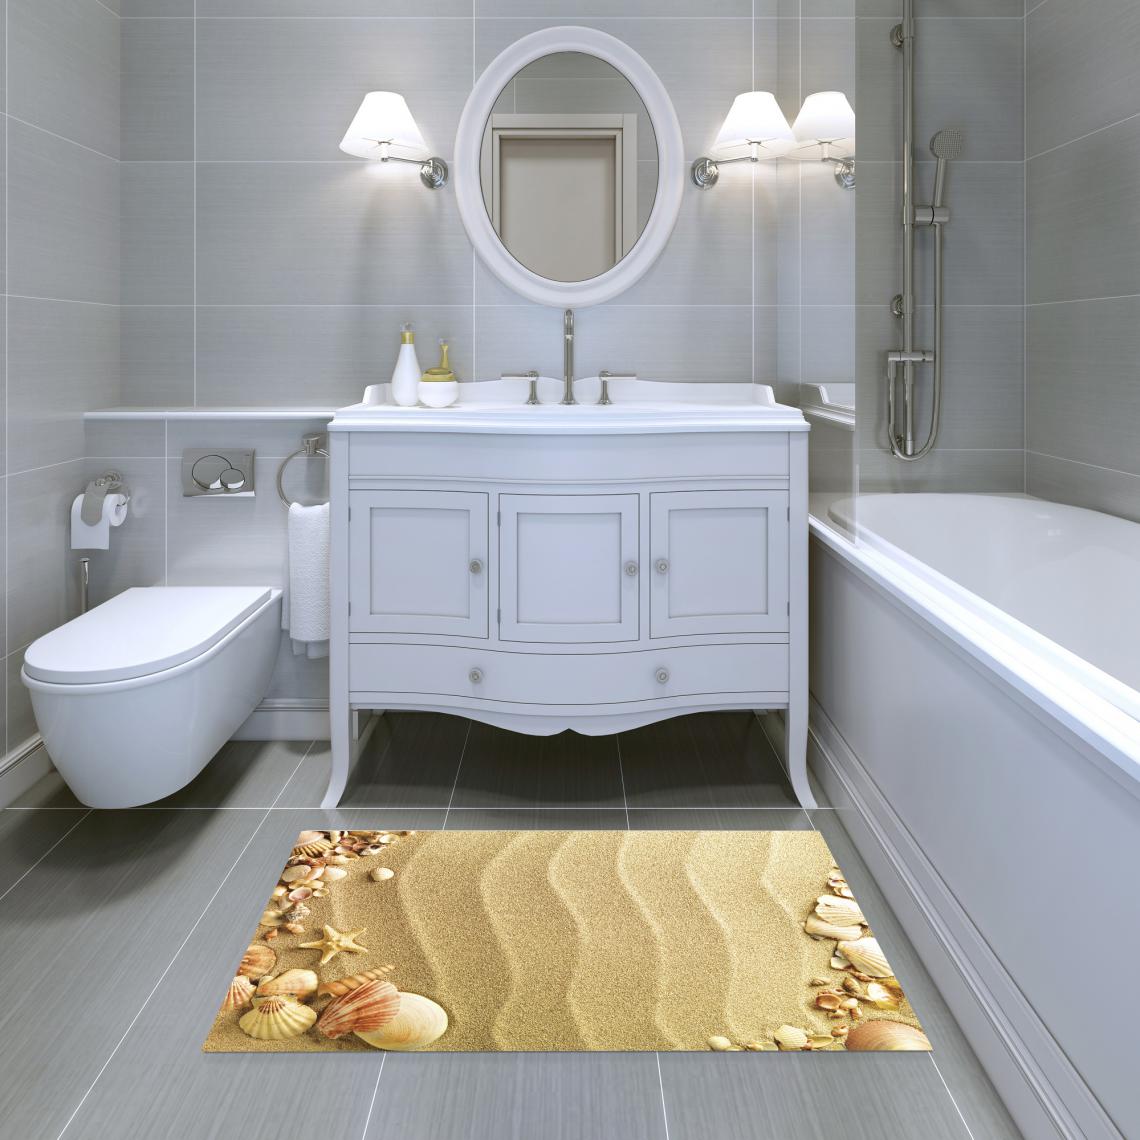 Alter - Tapis de salle de bain, 100% Made in Italy, Tapis antitache avec impression numérique, Tapis antidérapant et lavable, Modèle Alana, cm 90x52 - Tapis